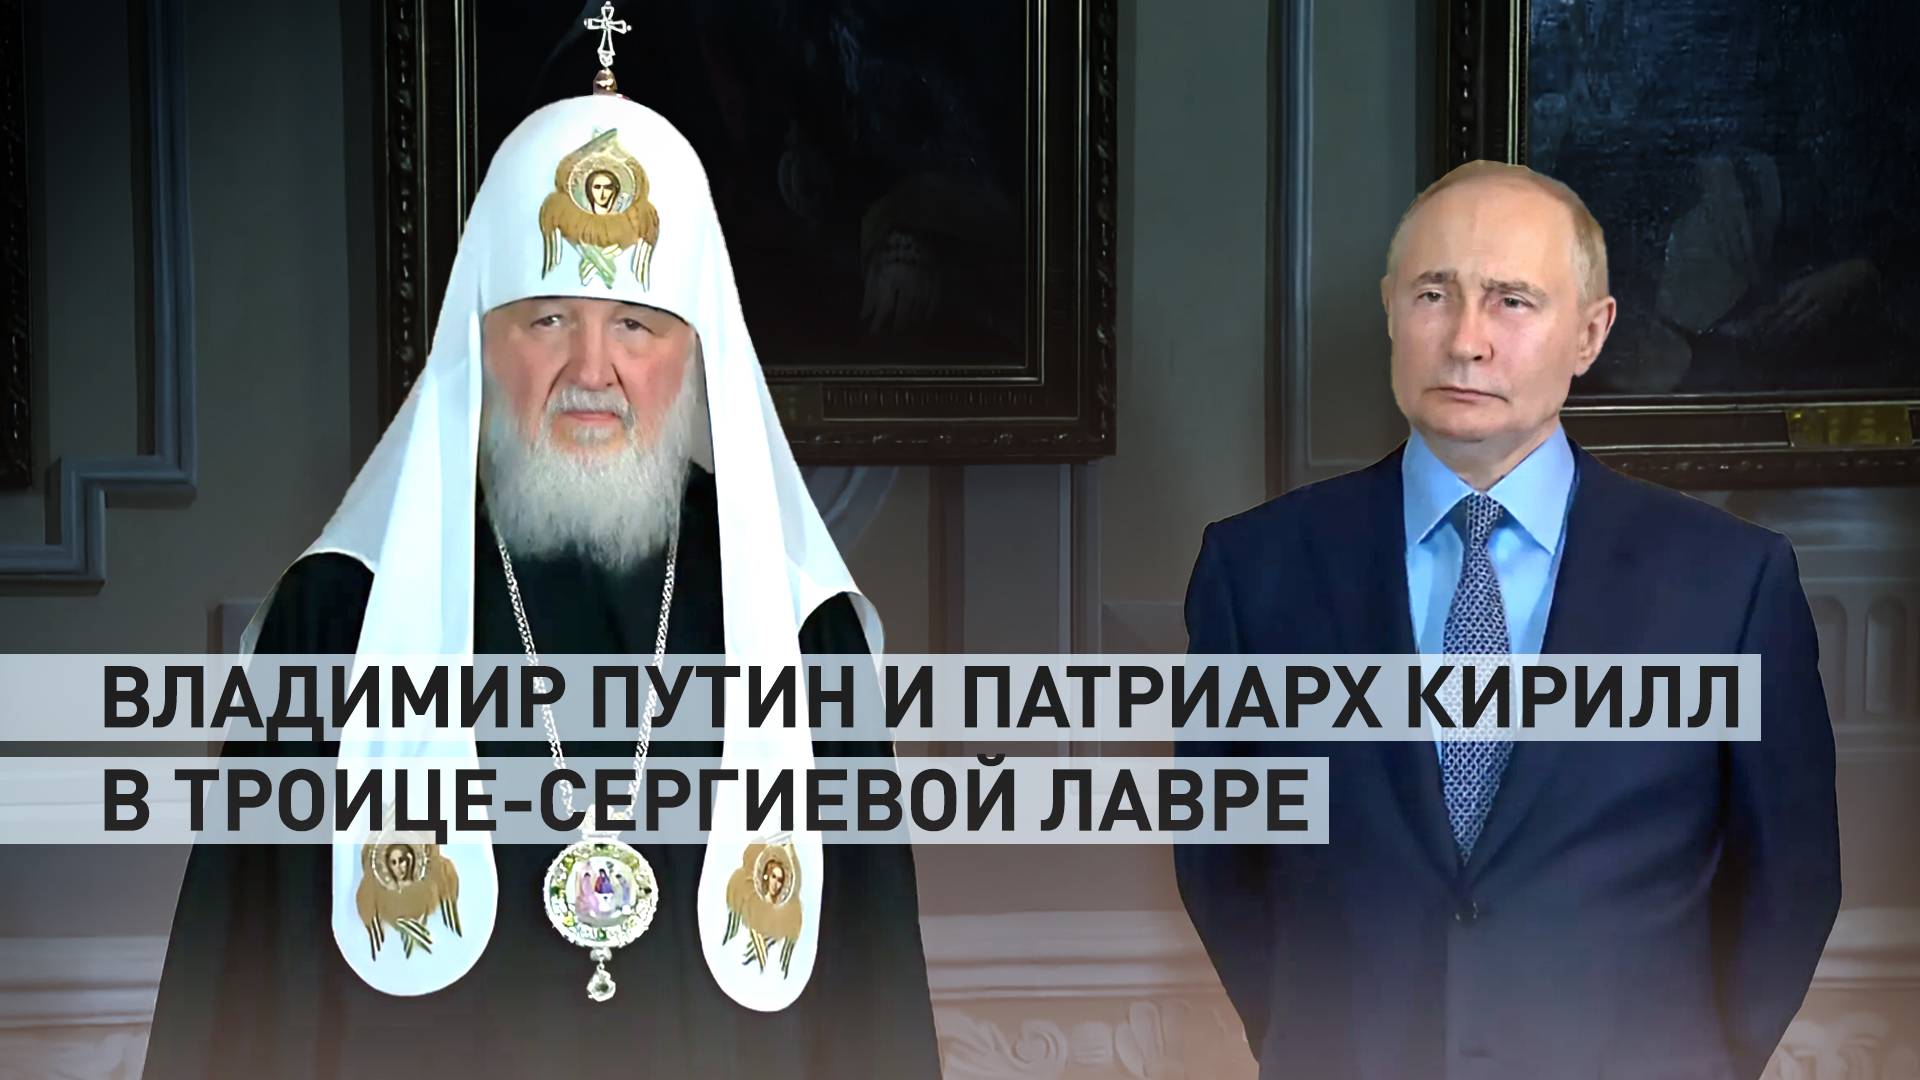 Путин и патриарх Кирилл посетили Троице-Сергиеву лавру — видео